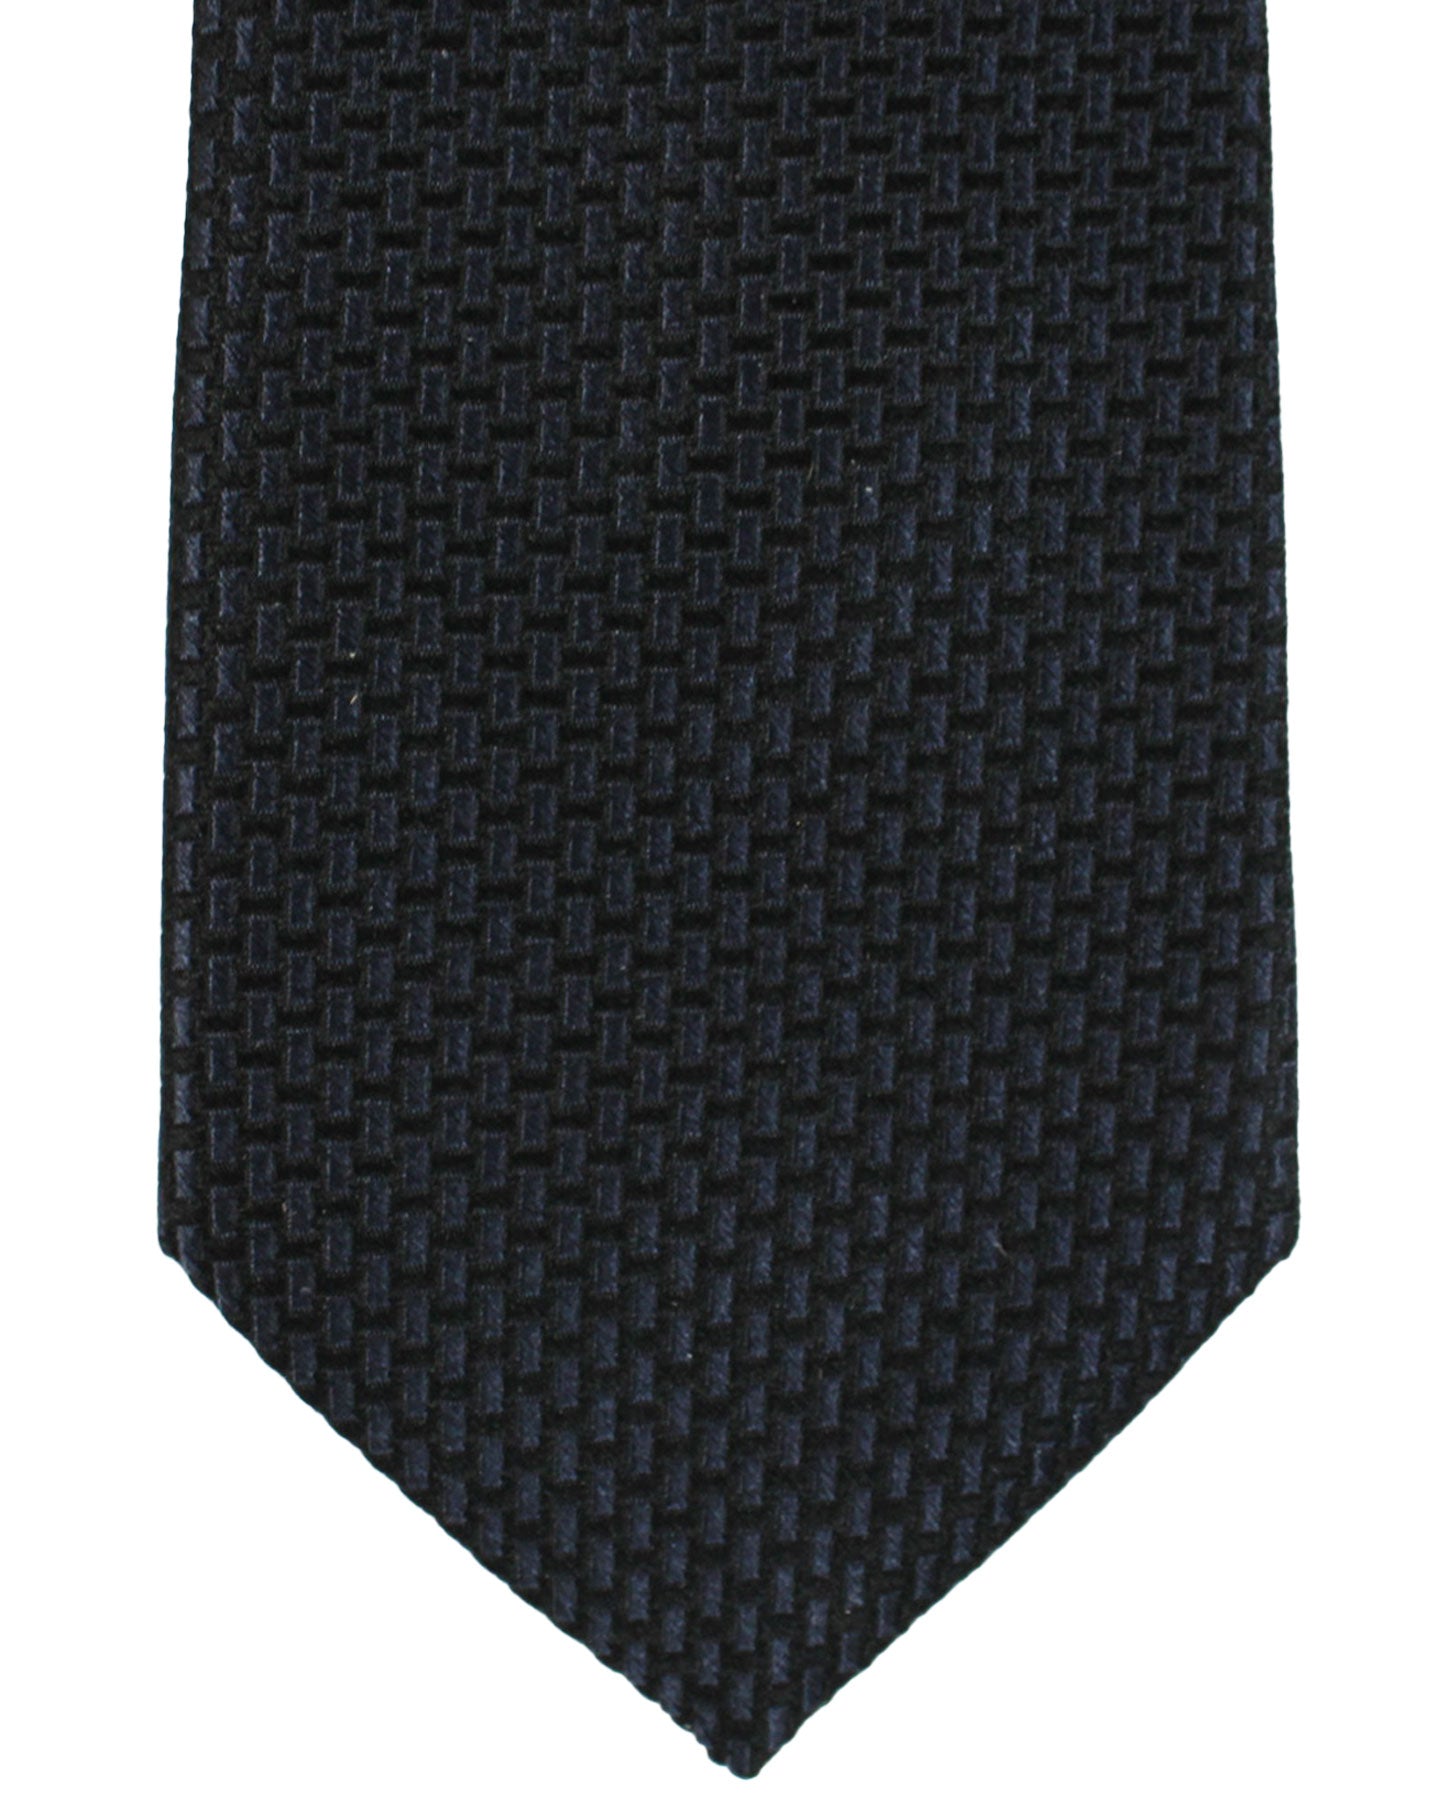 Armani Silk Tie Midnight Blue Black Geometric Armani Collezioni